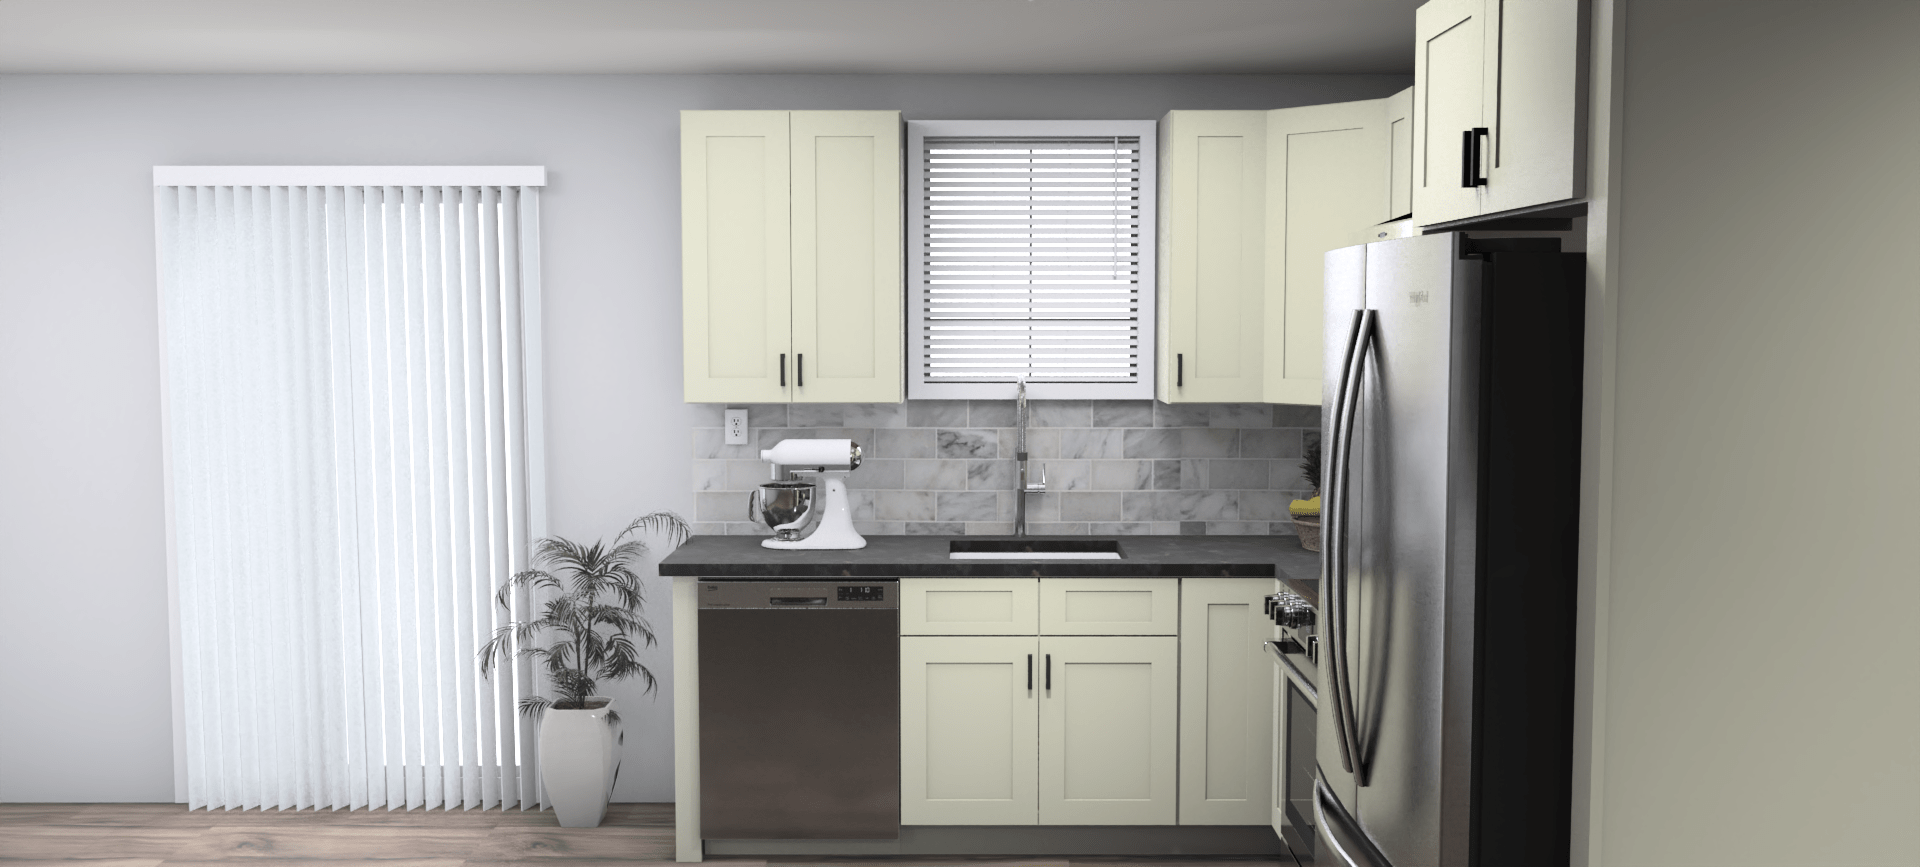 Fabuwood Allure Galaxy Linen 8 x 10 L Shaped Kitchen Side Layout Photo